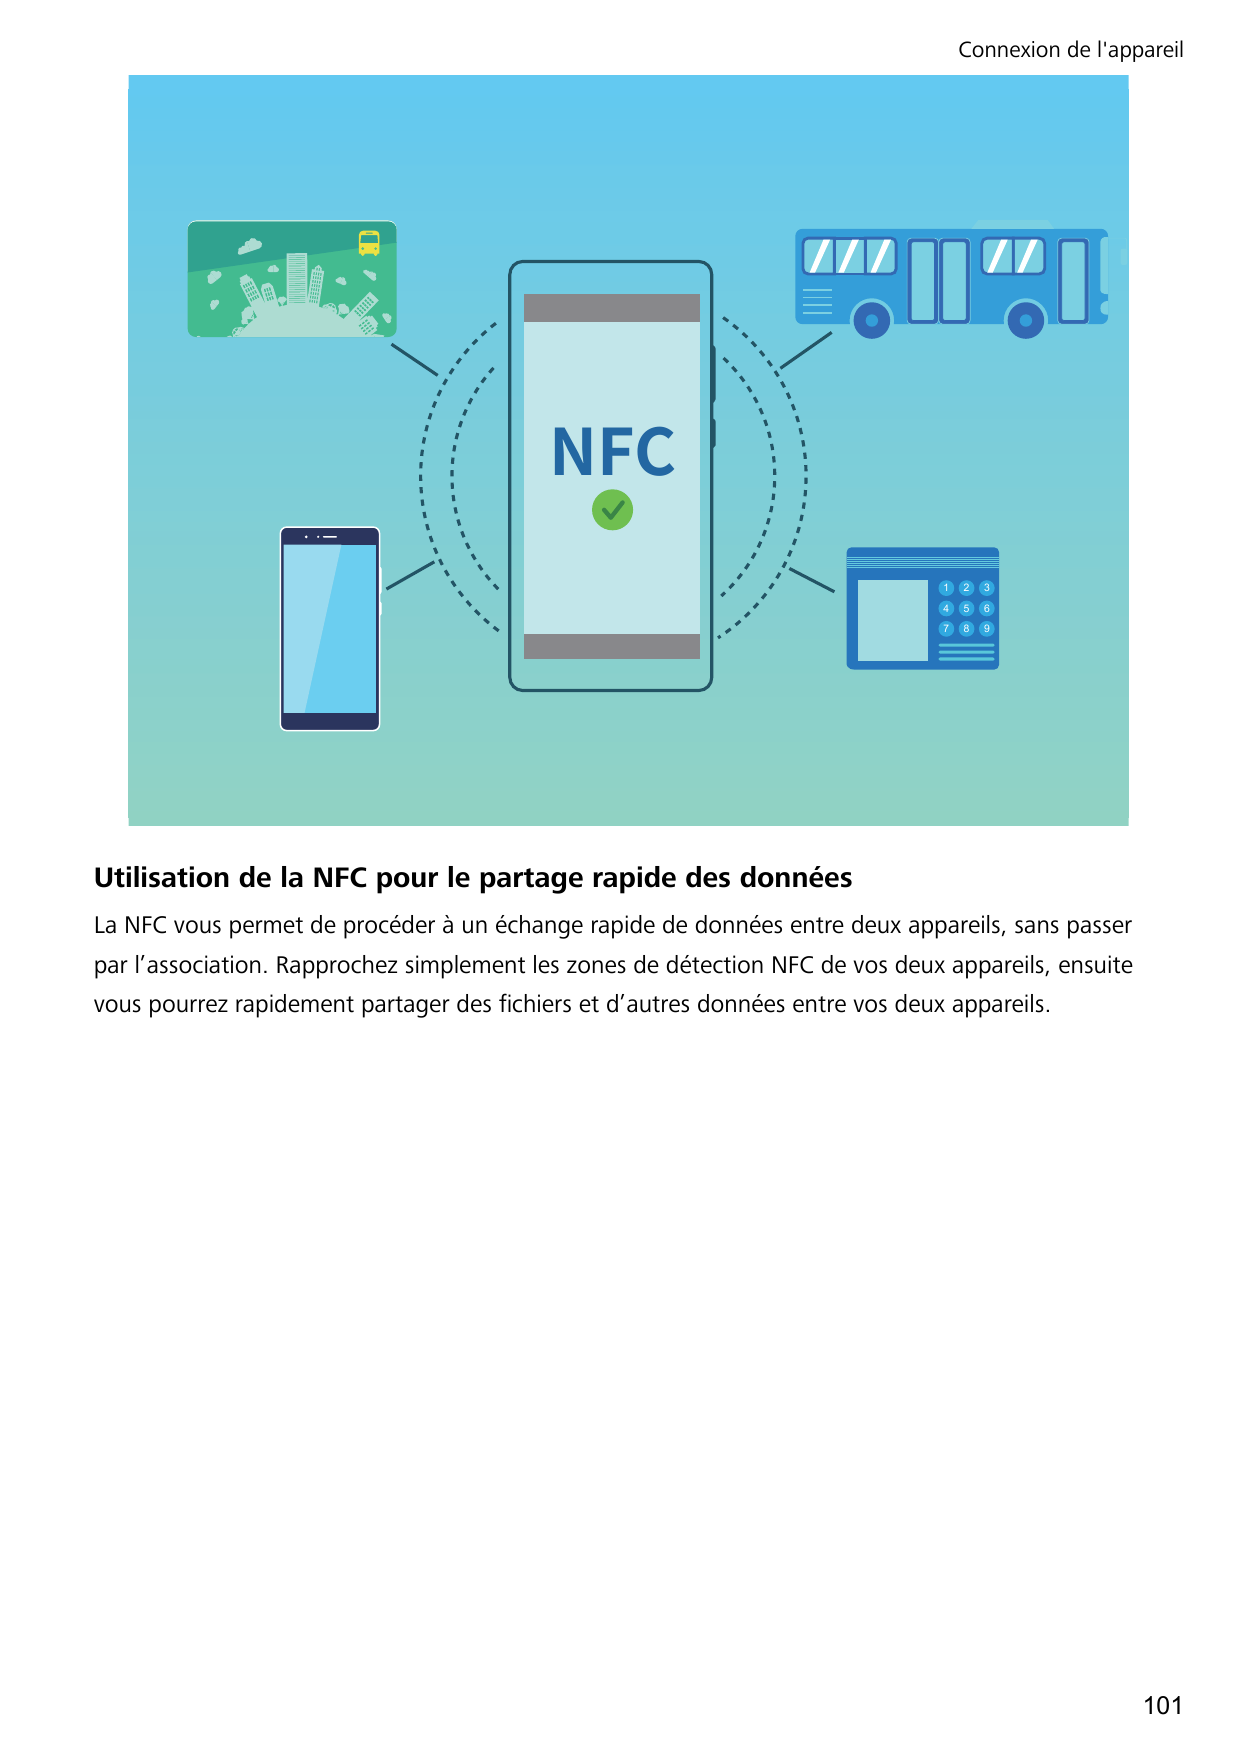 Connexion de l'appareil/'$123456789Utilisation de la NFC pour le partage rapide des donnéesLa NFC vous permet de procéder à un é